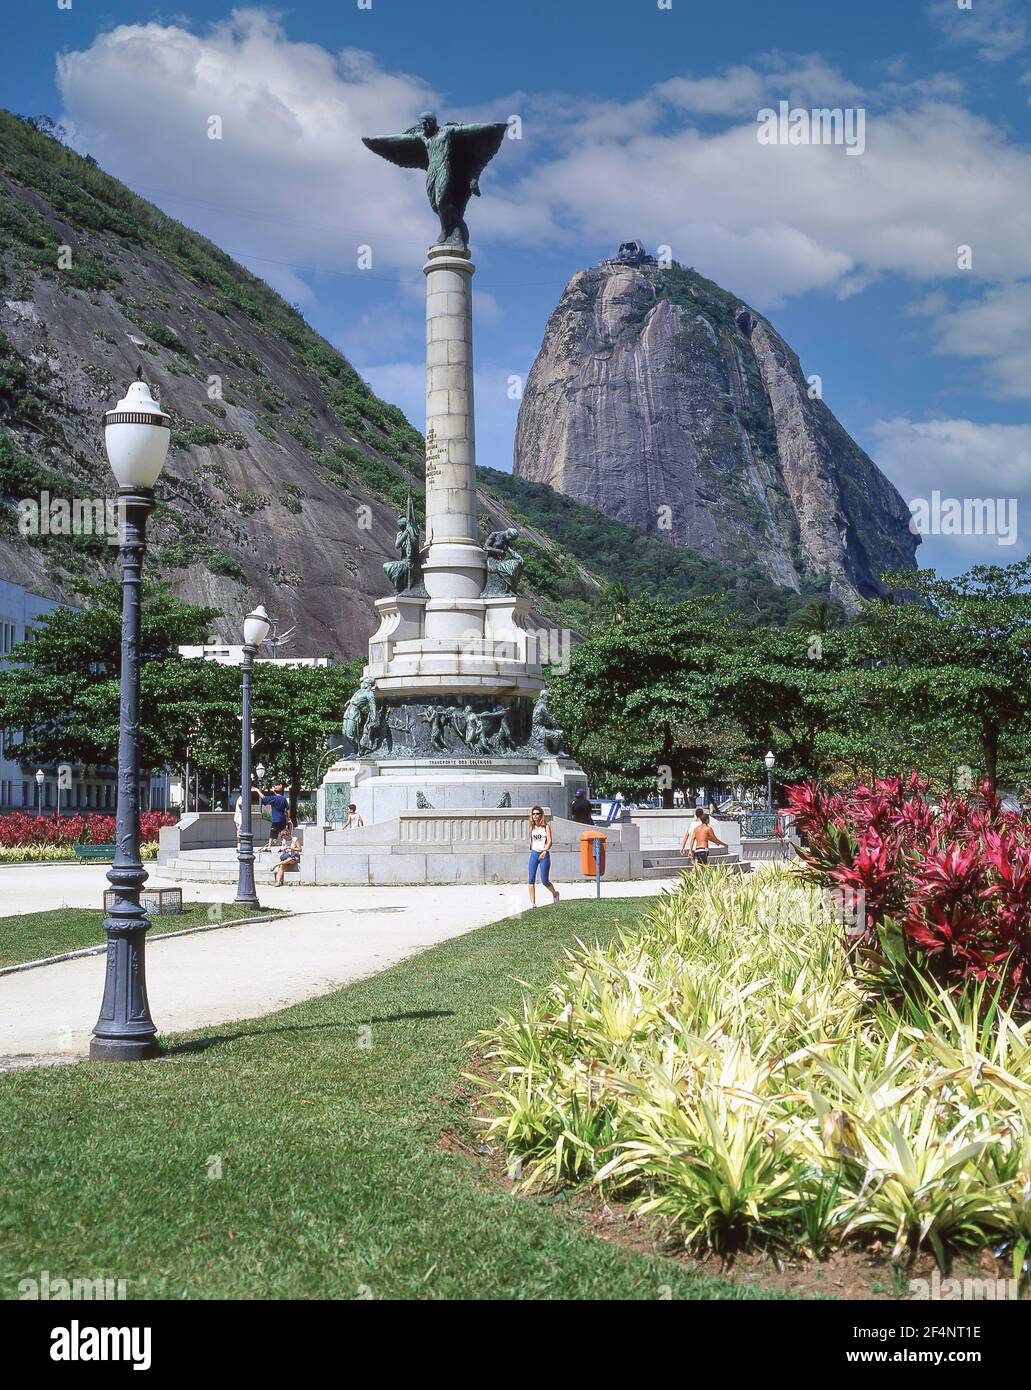 Sugarloaf Mountain and War Memorial, Rio de Janeiro, Republic of Brazil Stock Photo